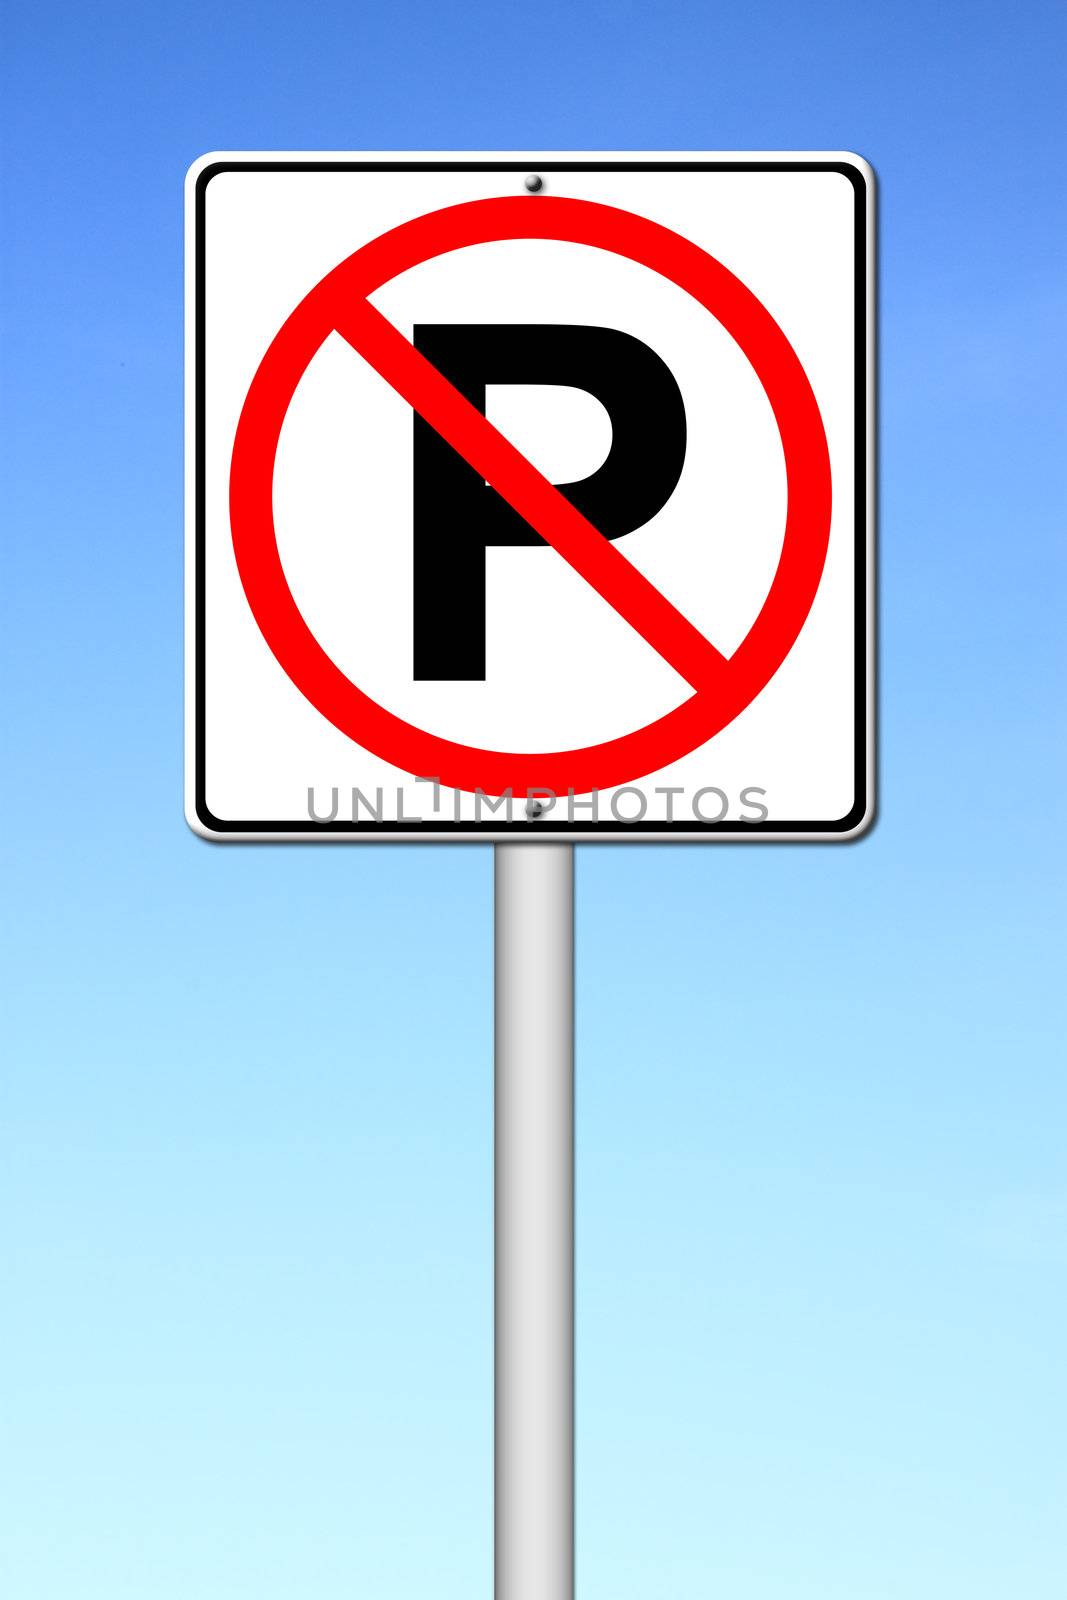 No parking sign over a blue sky